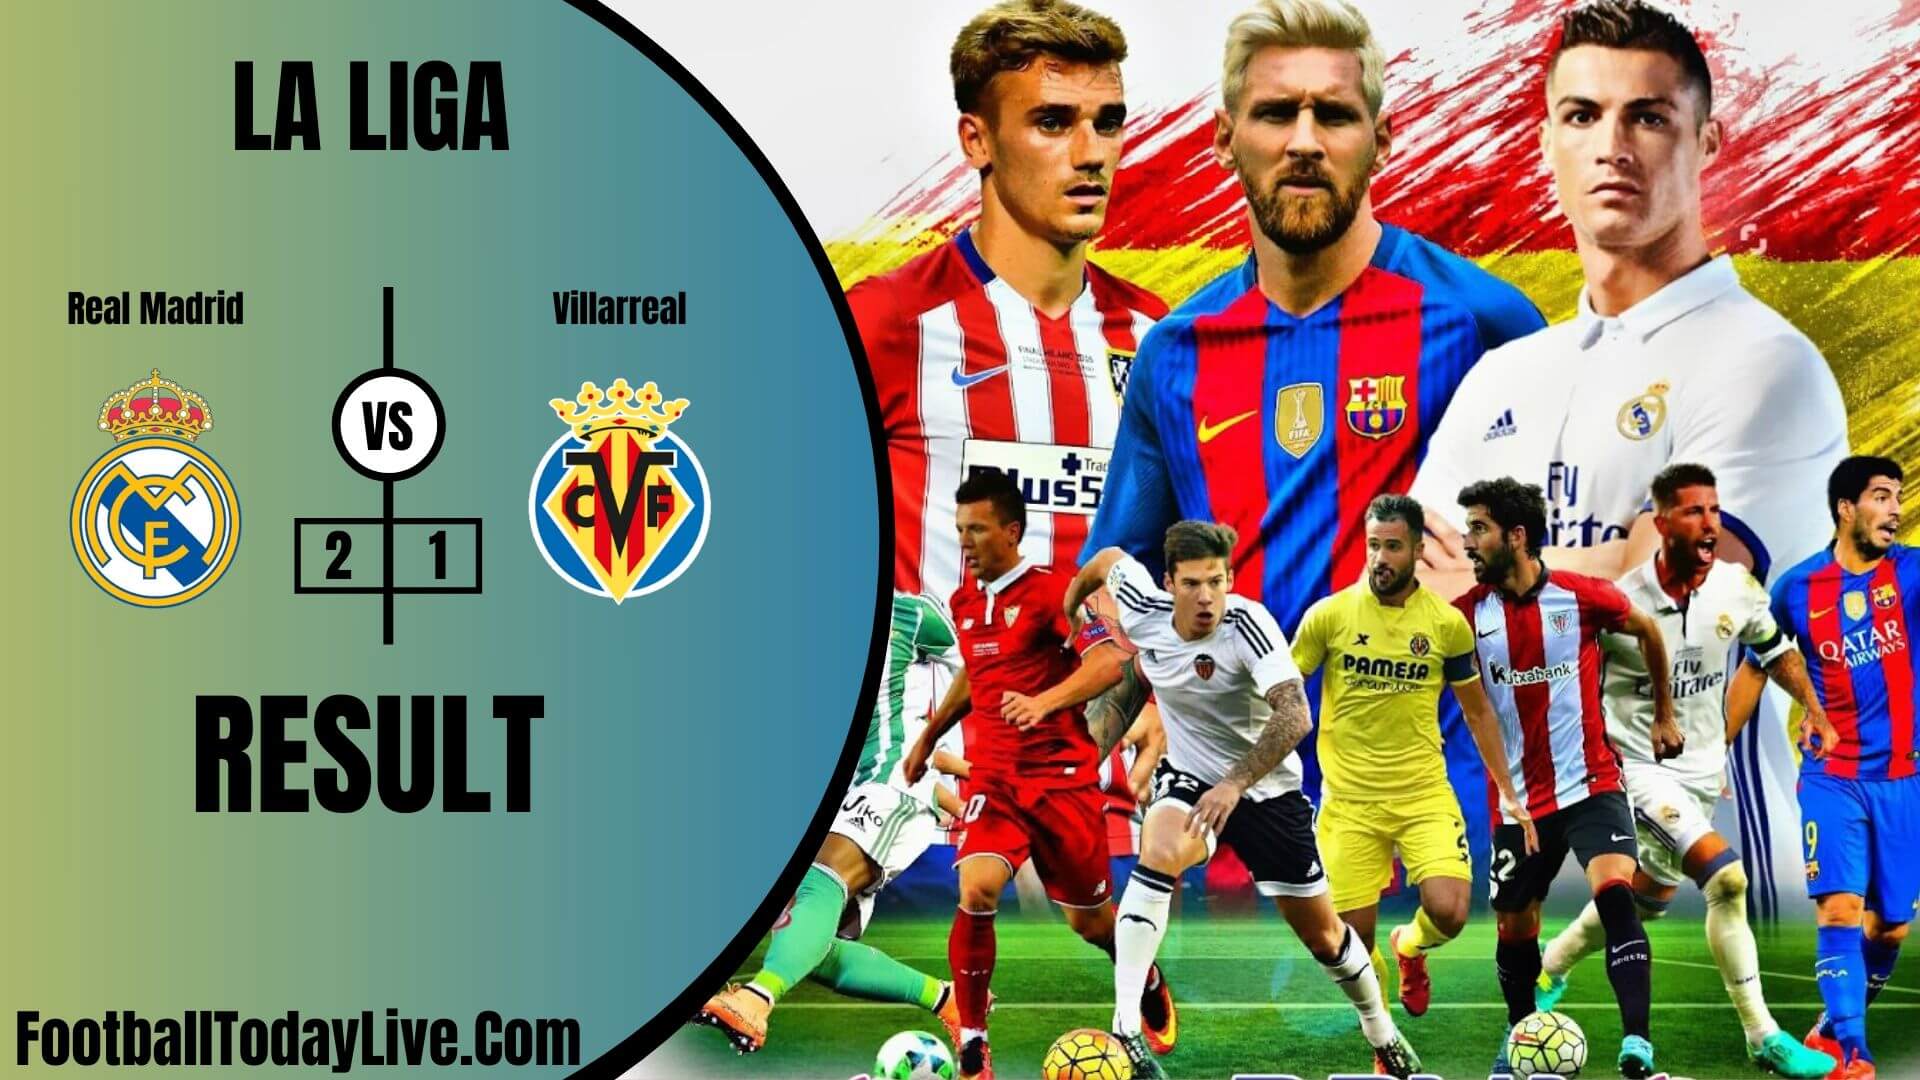 Real Madrid Vs Villarreal | La Liga Week 37 Result 2020